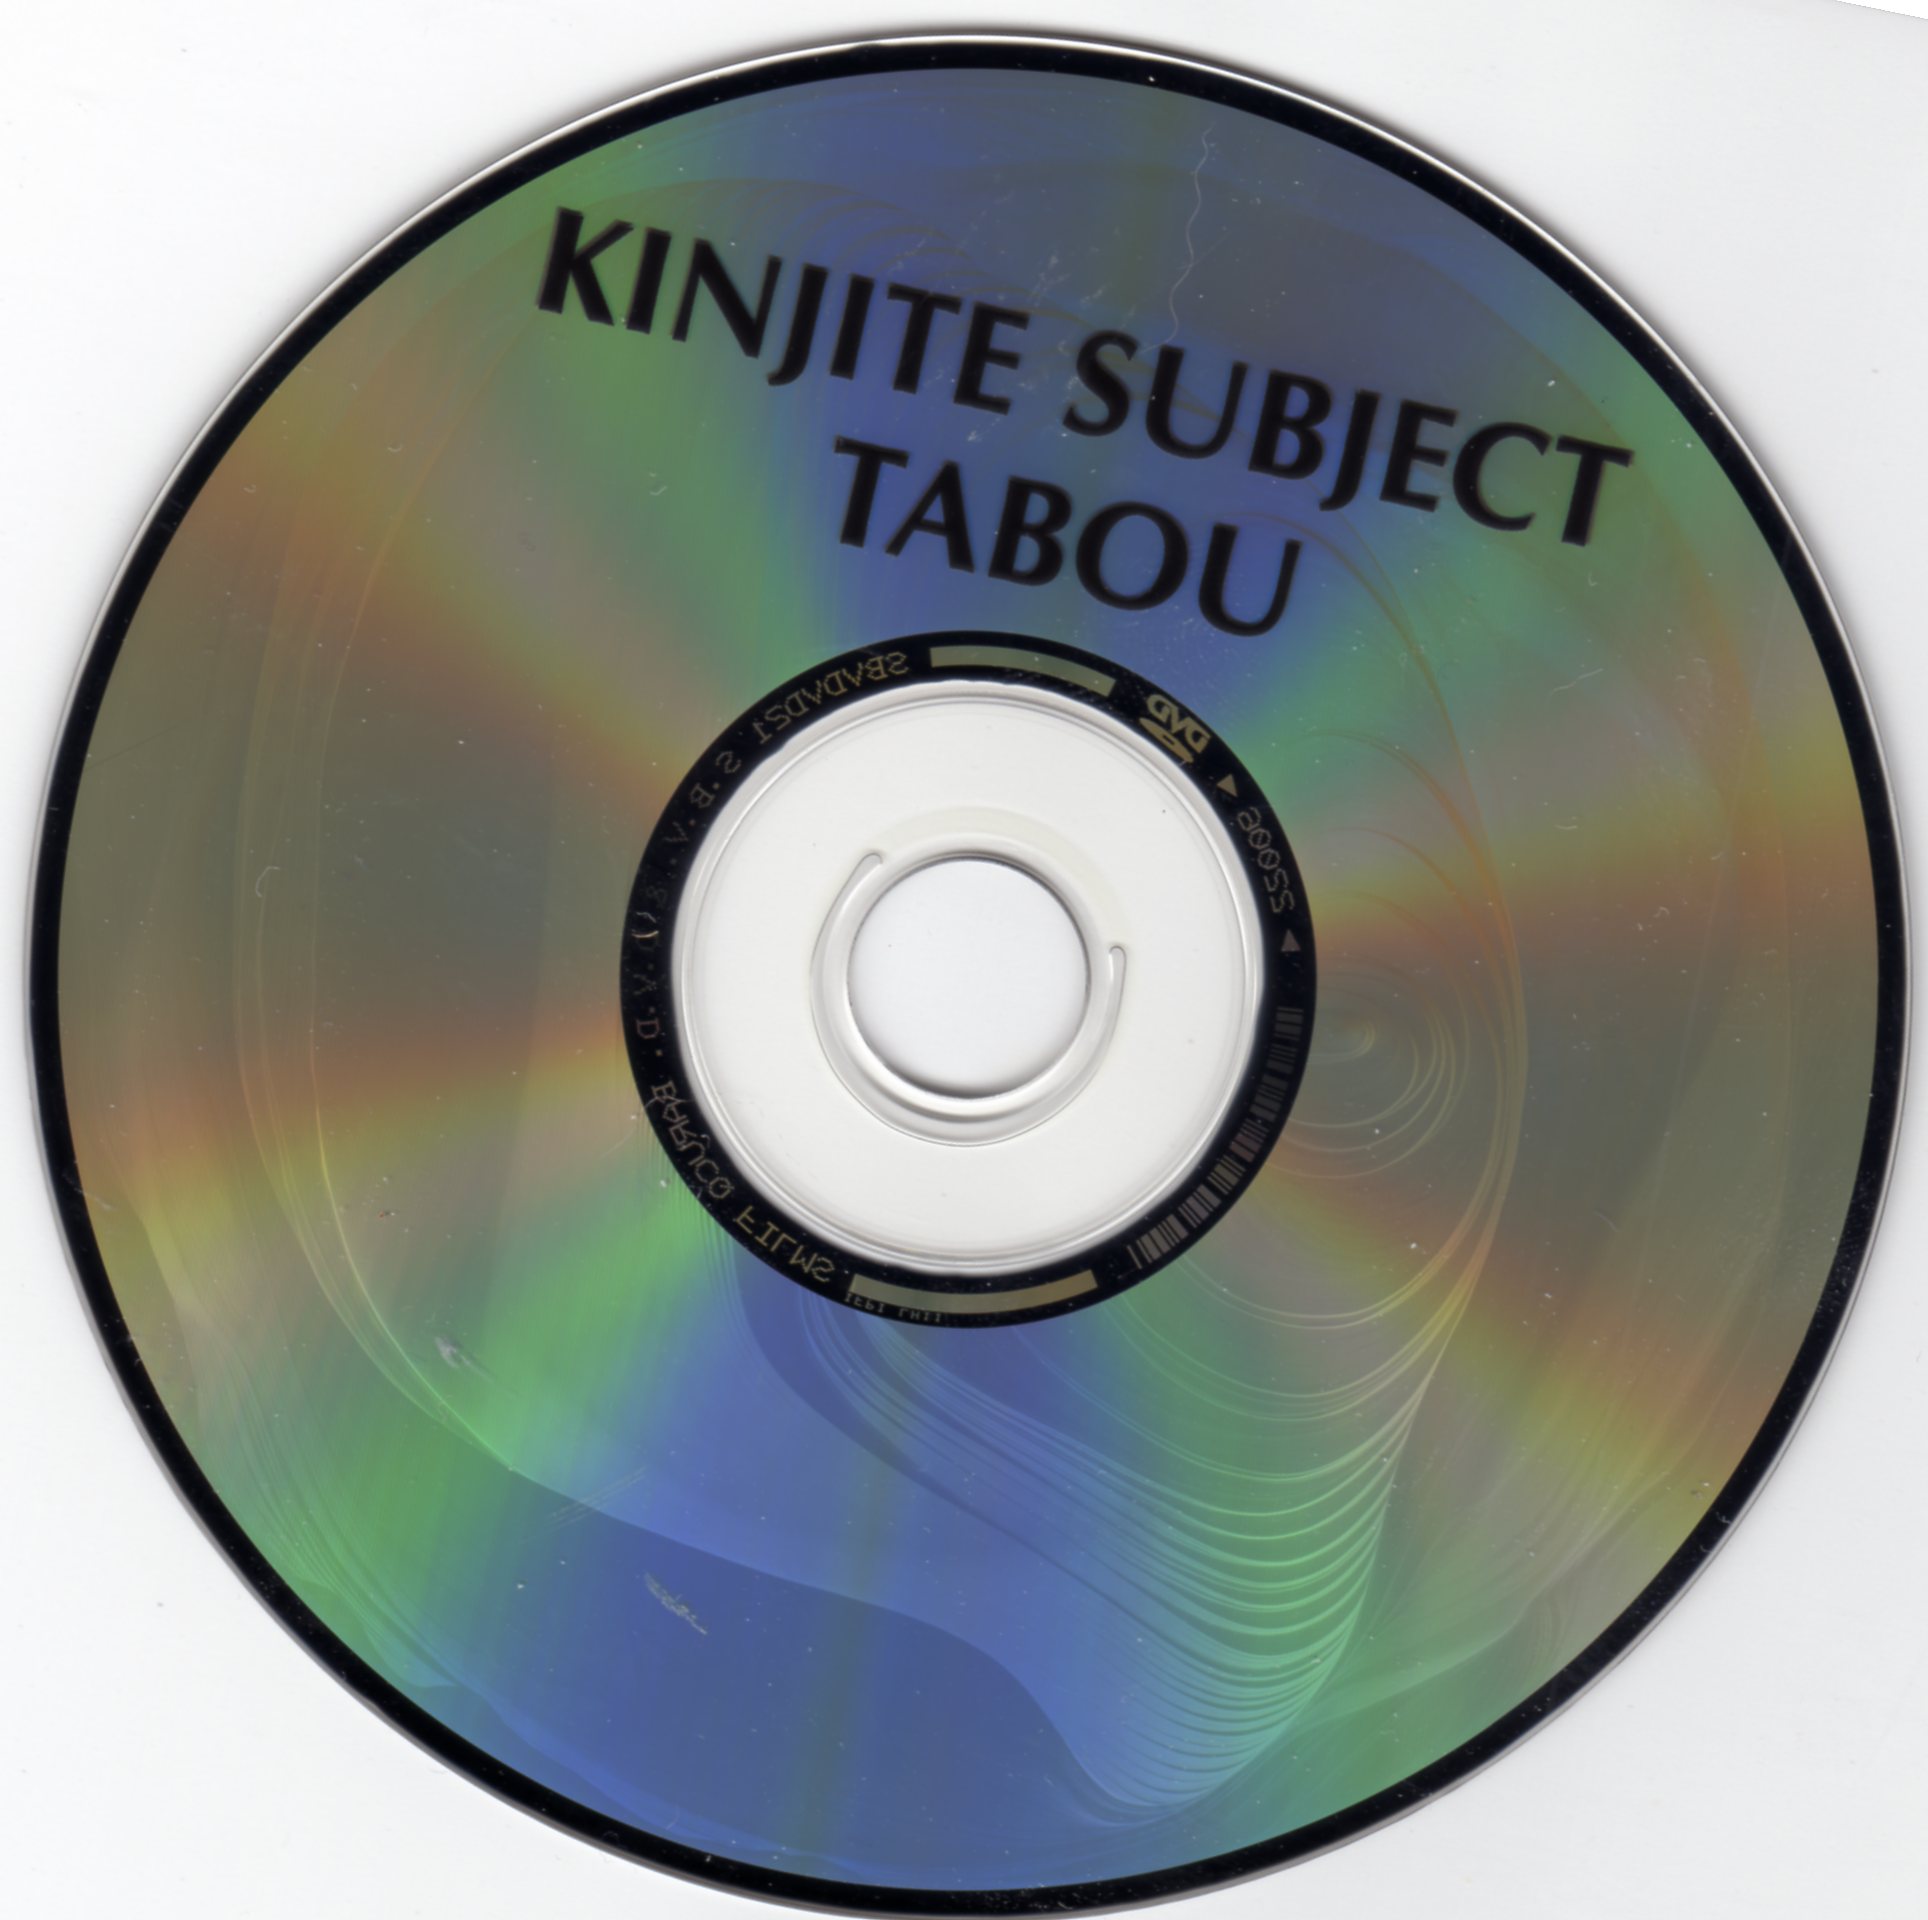 Kinjite, sujet tabou